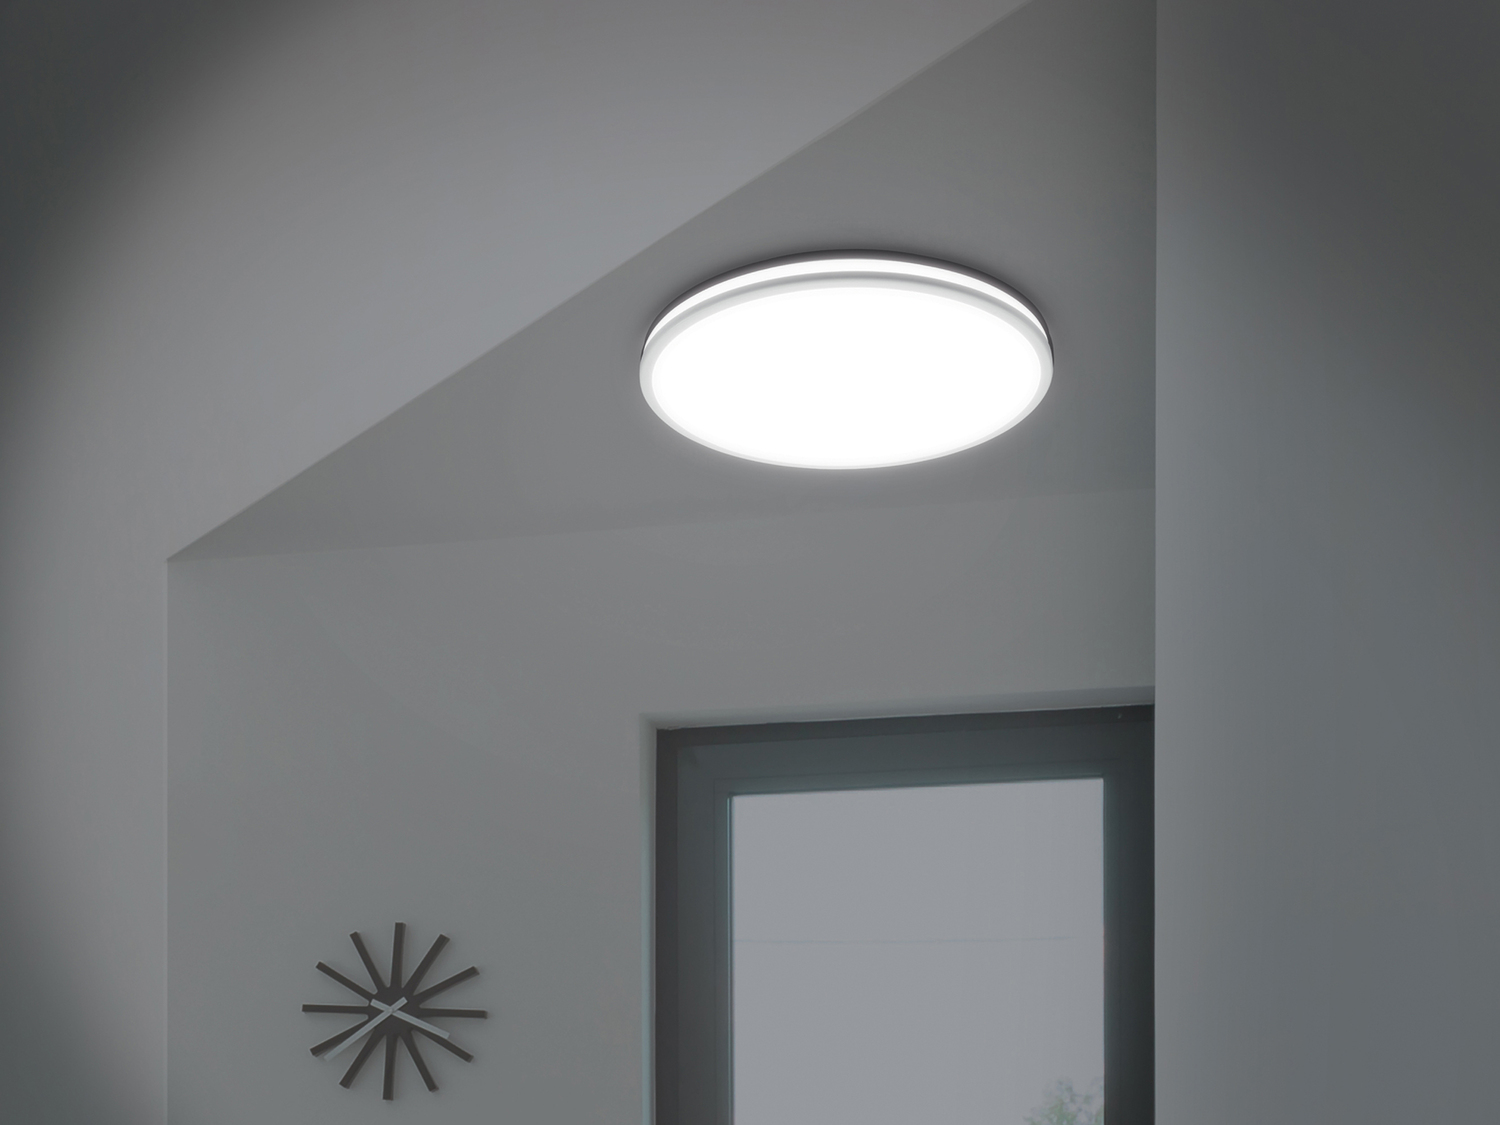 Lampada LED da soffitto o da parete Livarno, prezzo 12.99 € 
Dati tecnici
- ...